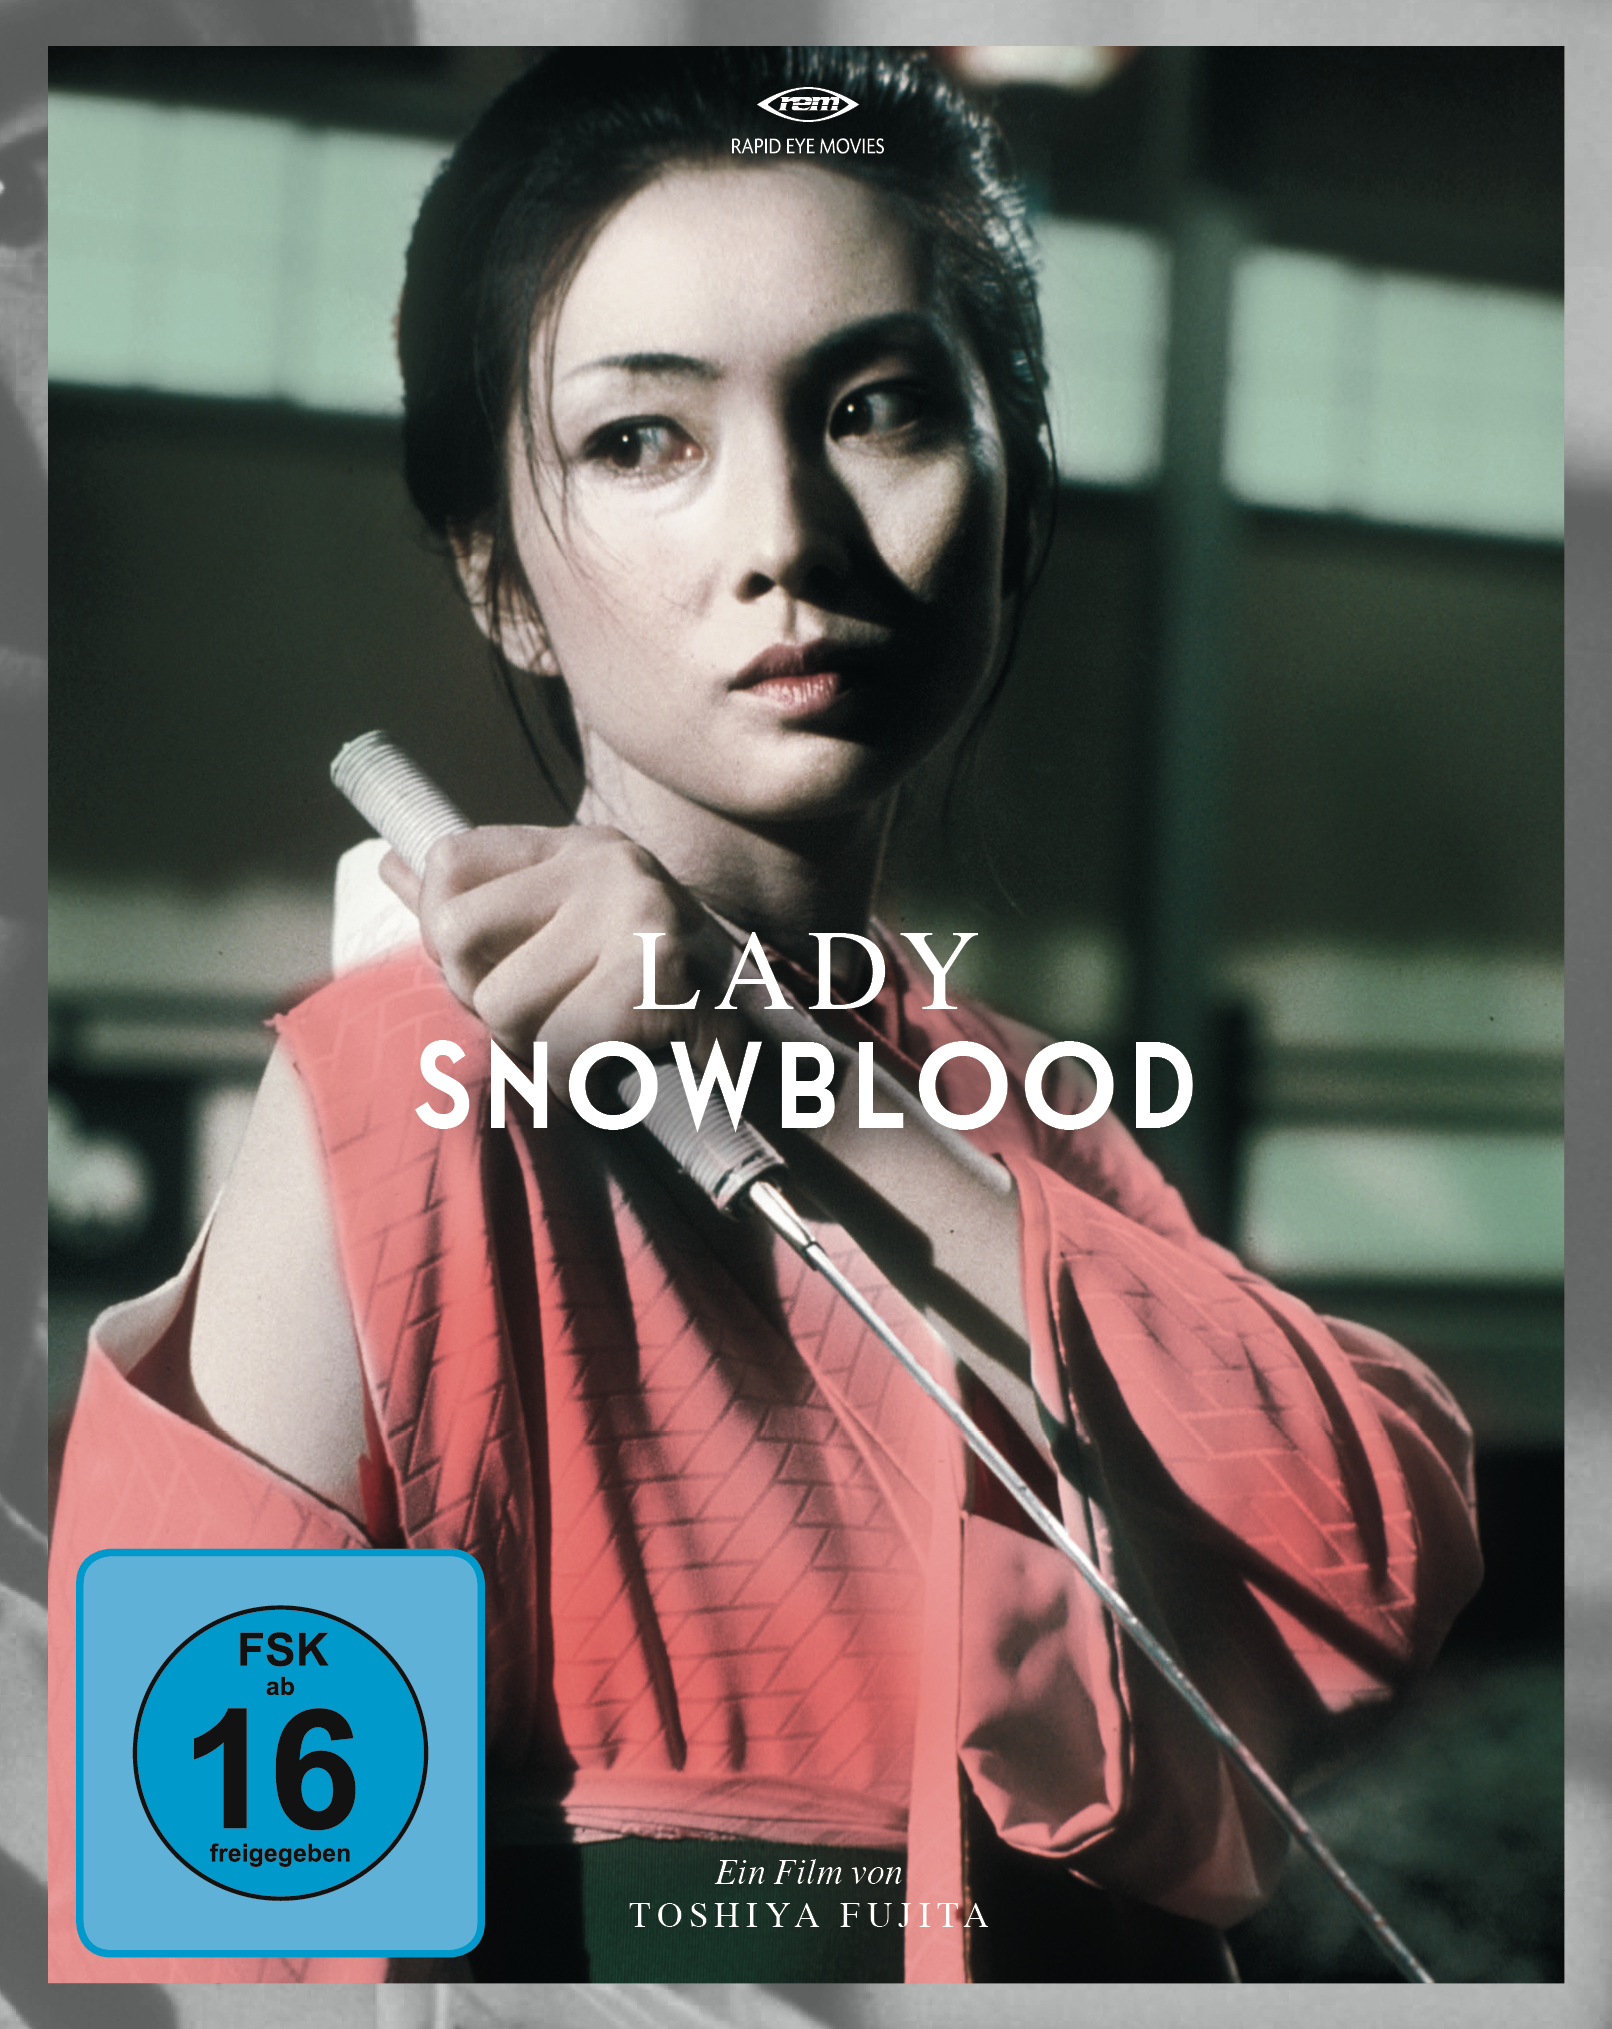 Lady-Snowblood-Cover-c-Rapid-Eye-Movies.jpg.jpg